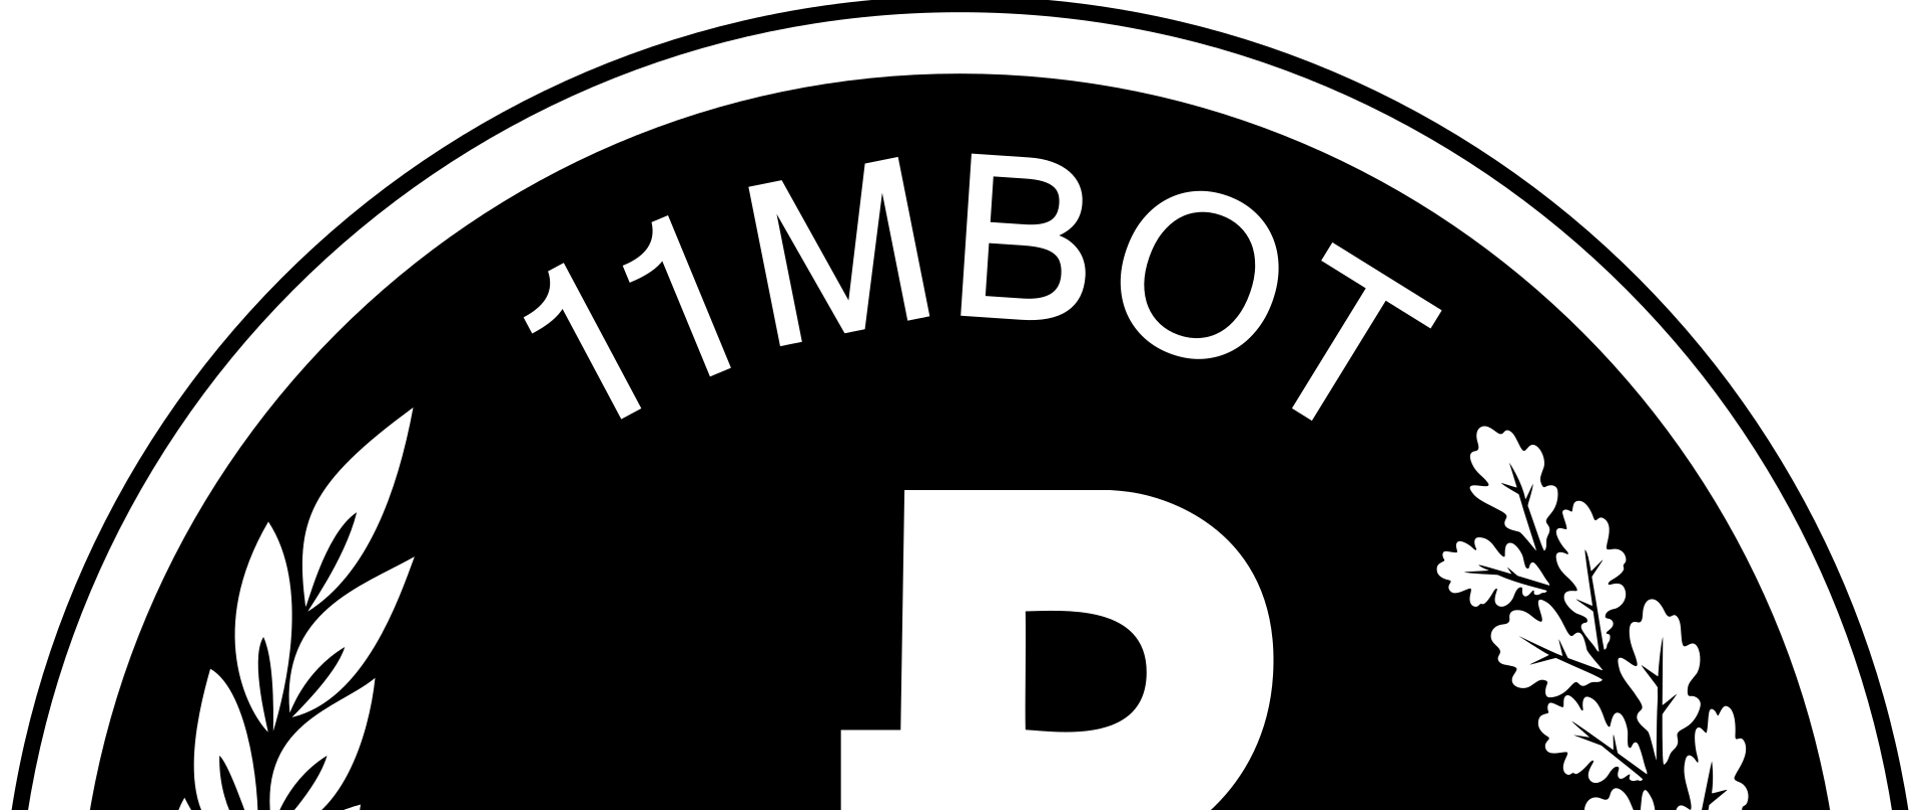 zdjęcie przedstawia czarne koło białą obwódką. W środku koła logo, nad nim napis 11 MBOT. po bokach logo z gałązki drzew.